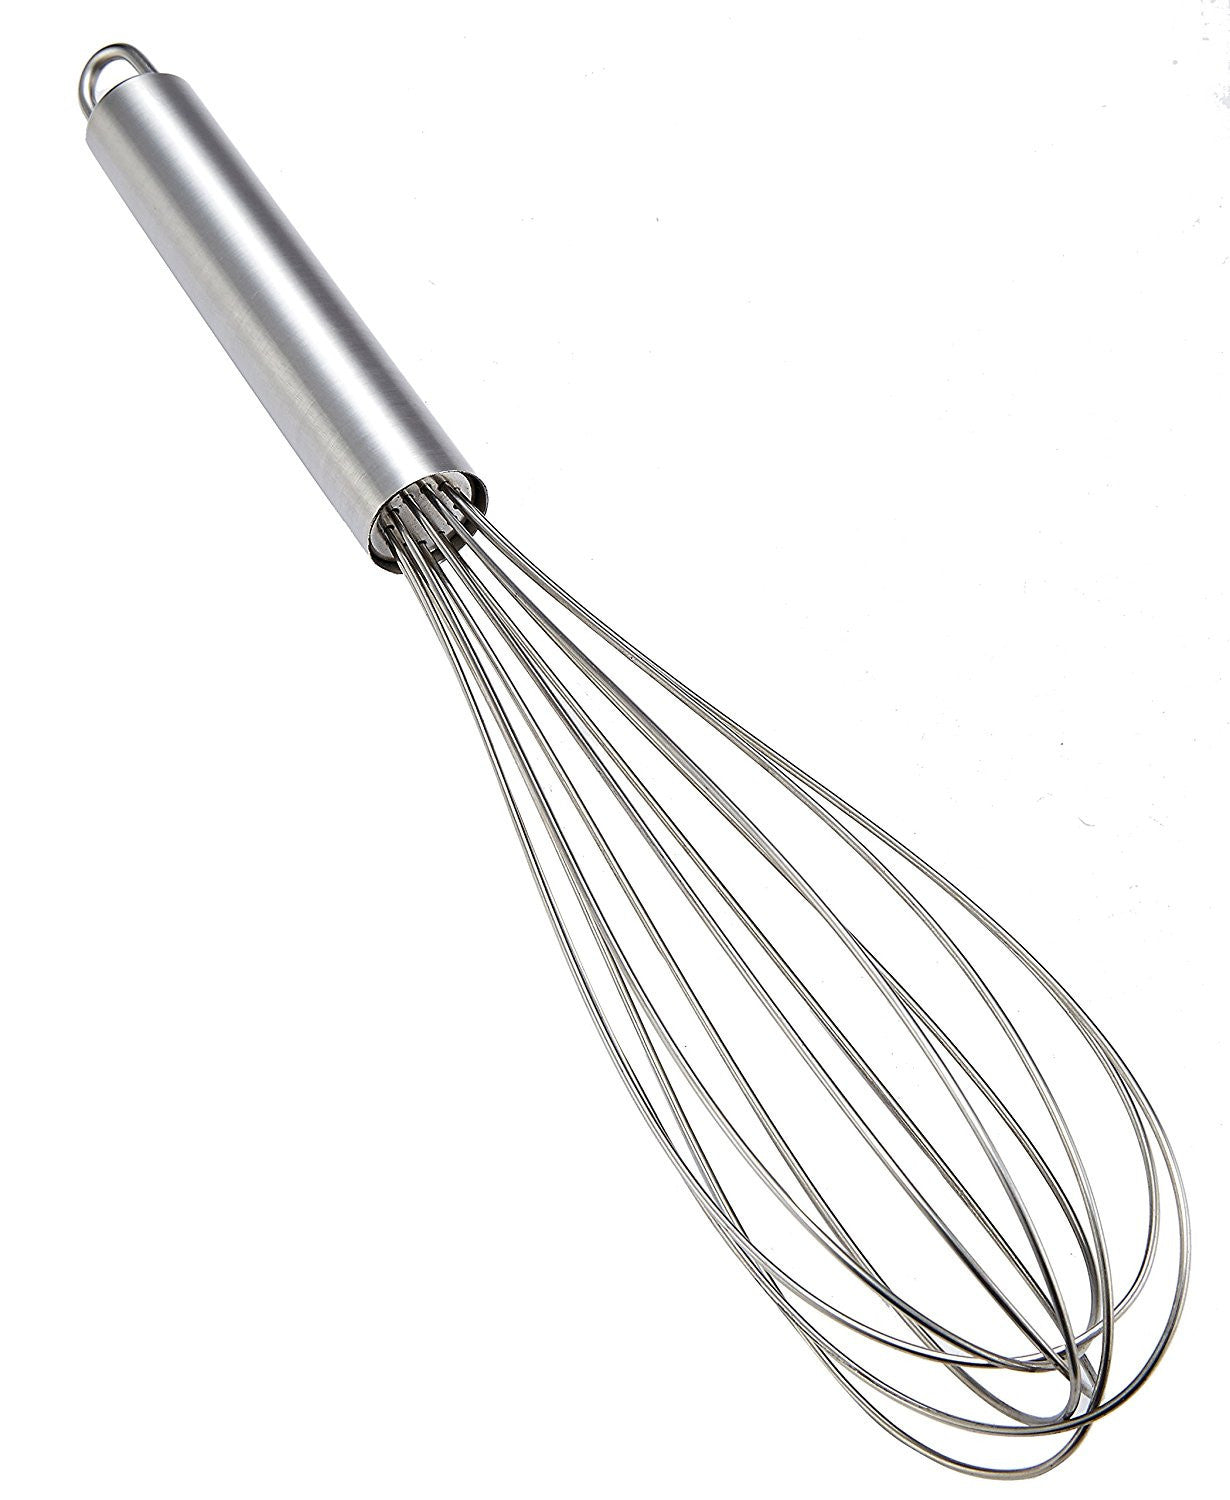 Stainless Steel Kitchen Utensil Balloon Shape Wire Whisk, Egg Beater